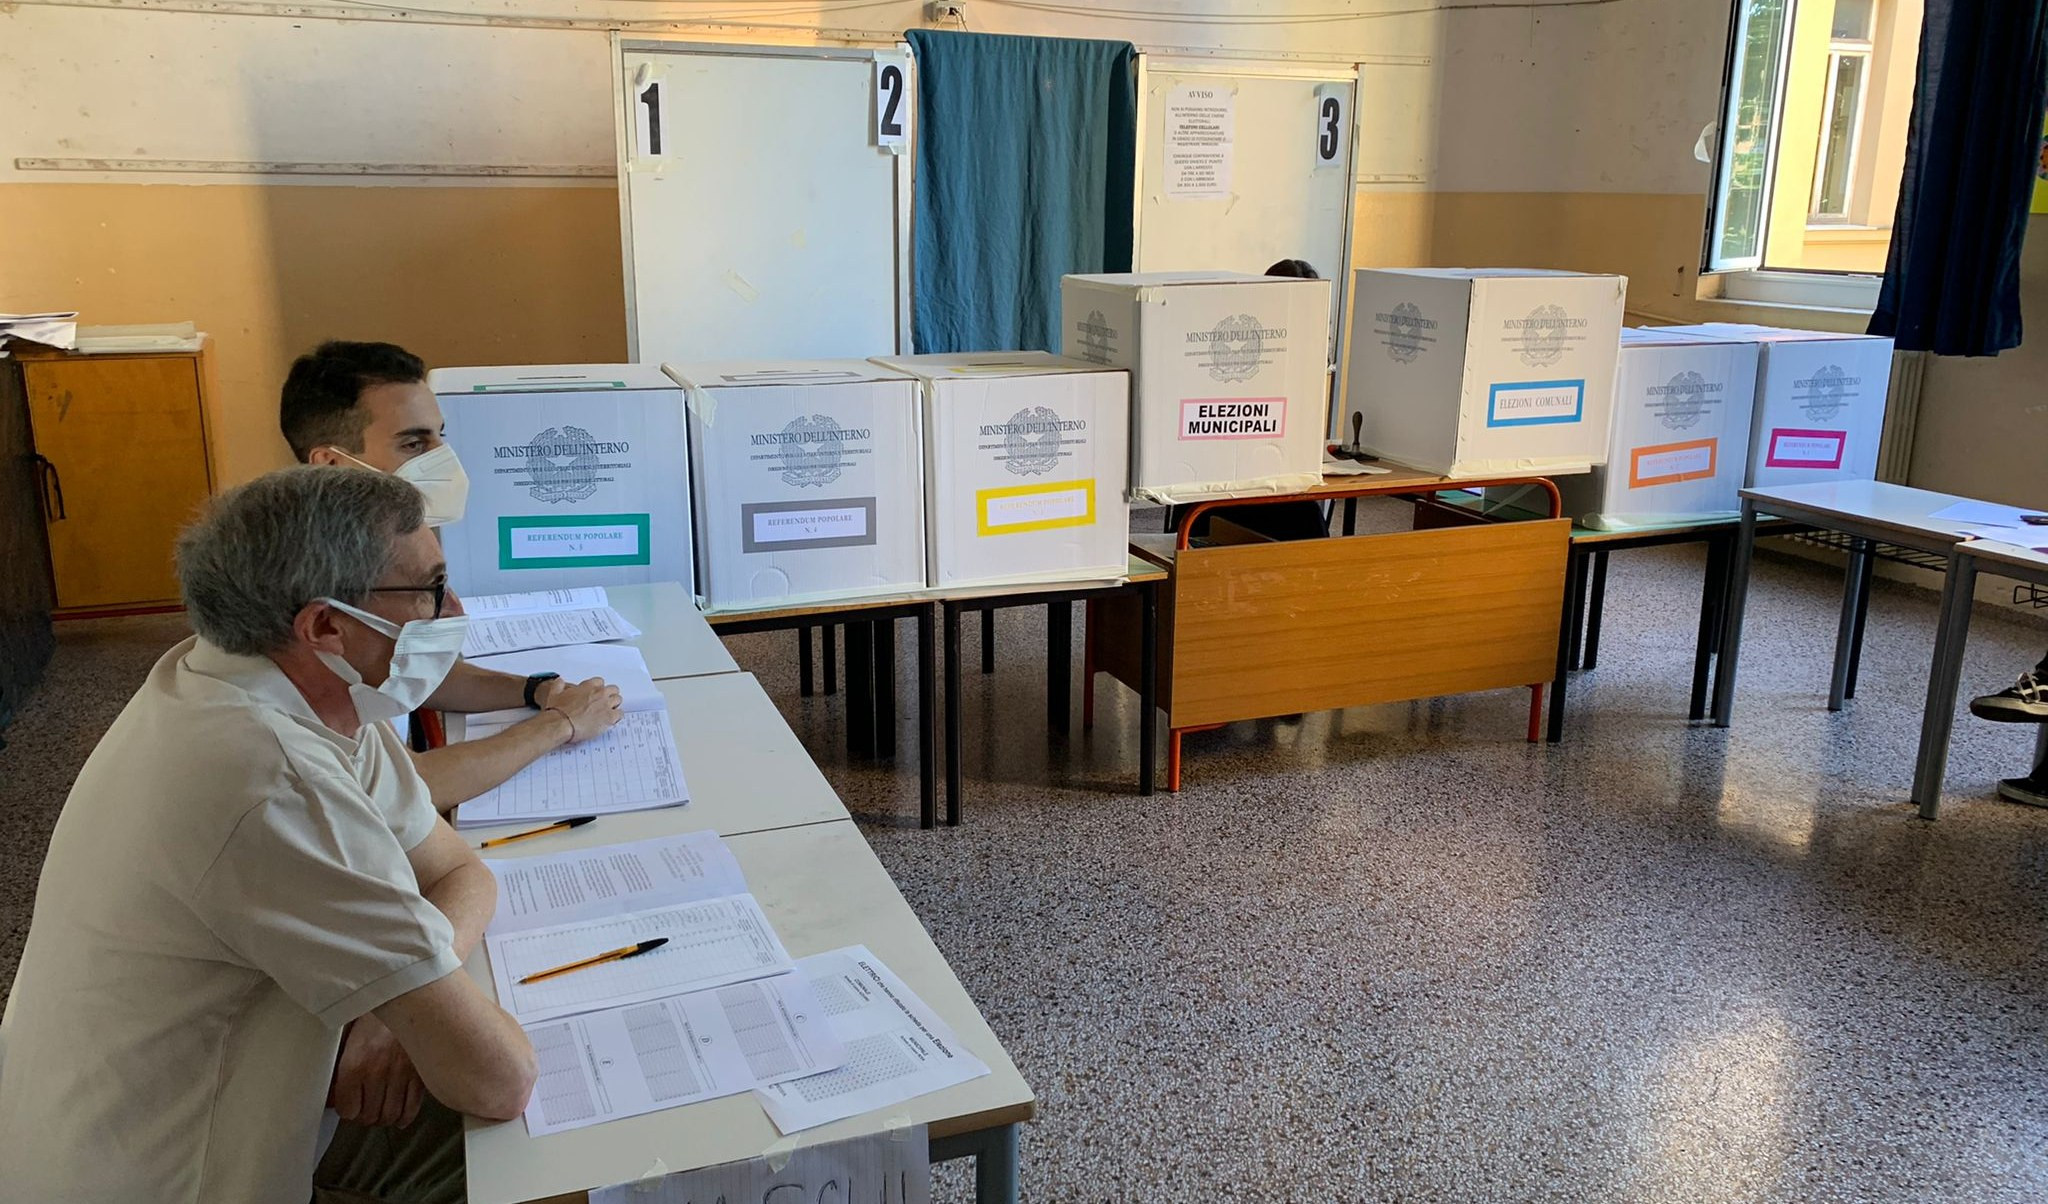 Elezioni comunali in Liguria, affluenza al 56%: persi 4 punti percentuali